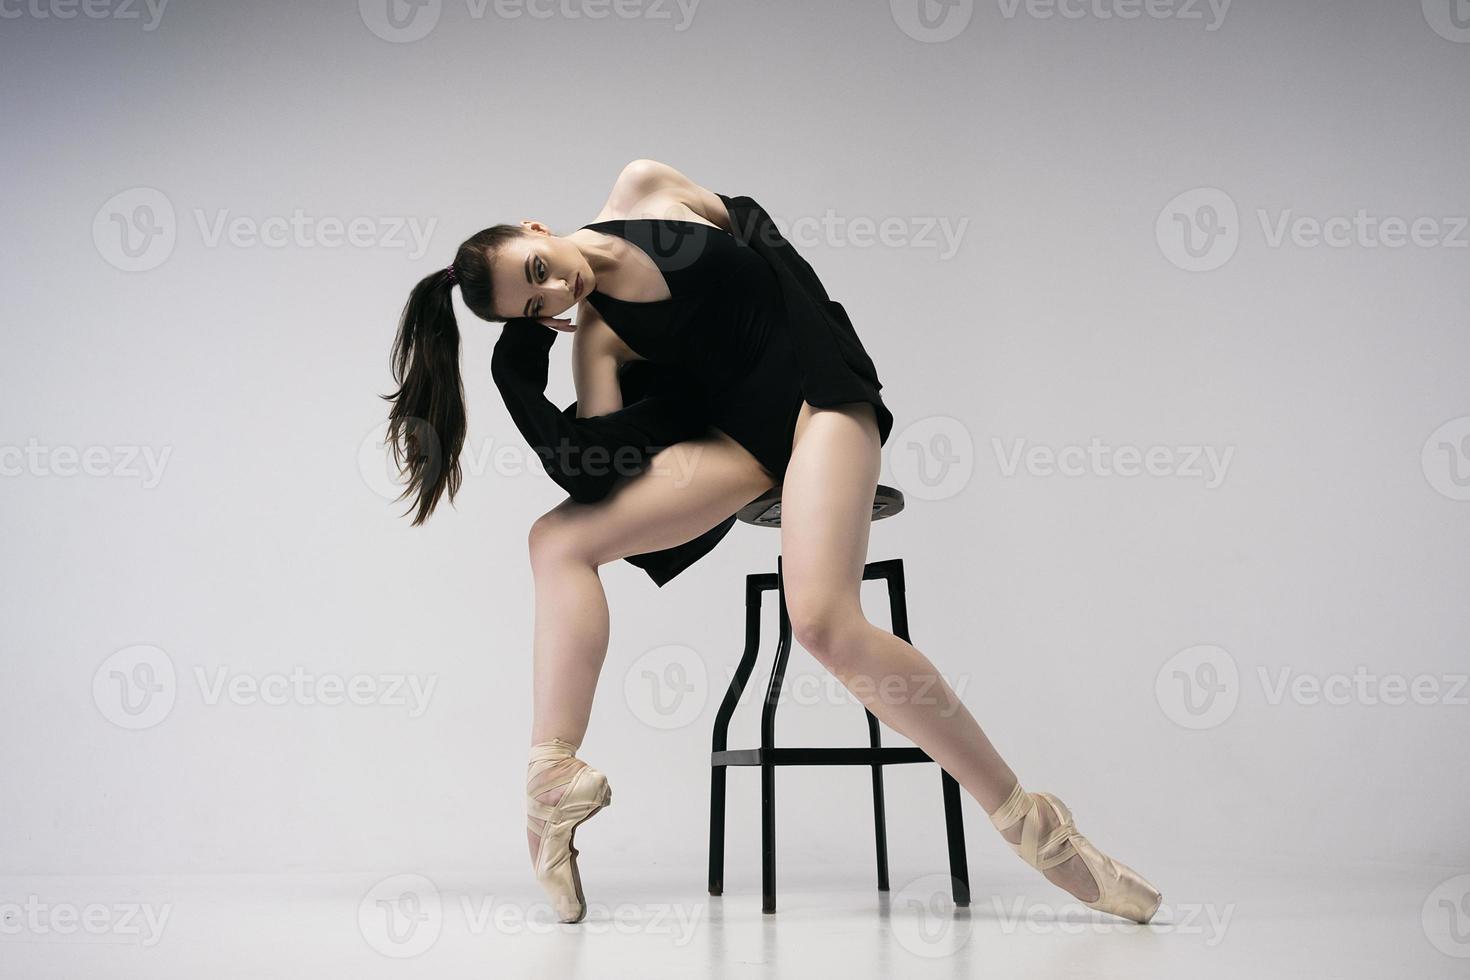 ballerina in einem body und einer schwarzen jacke improvisiert klassische und moderne choreographien in einem fotostudio foto